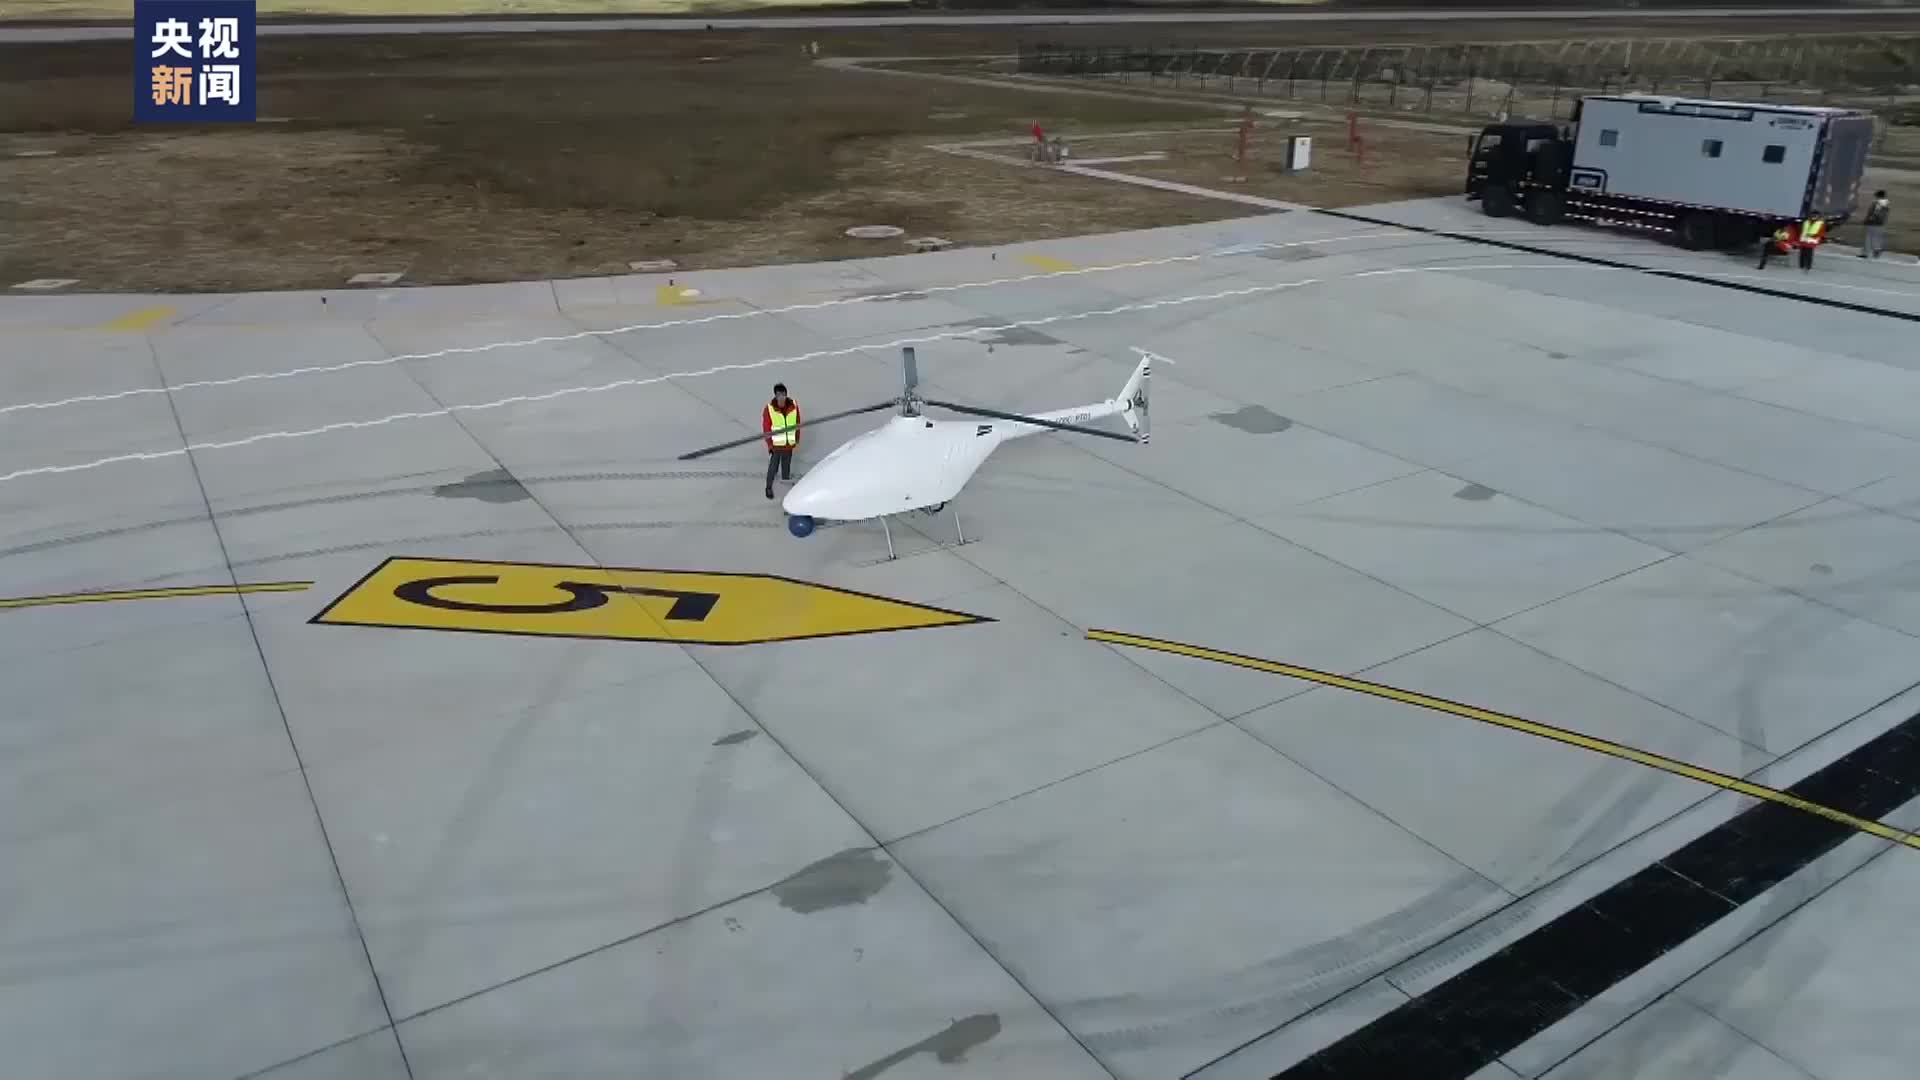 棒！国产无人直升机创飞行海拔新纪录